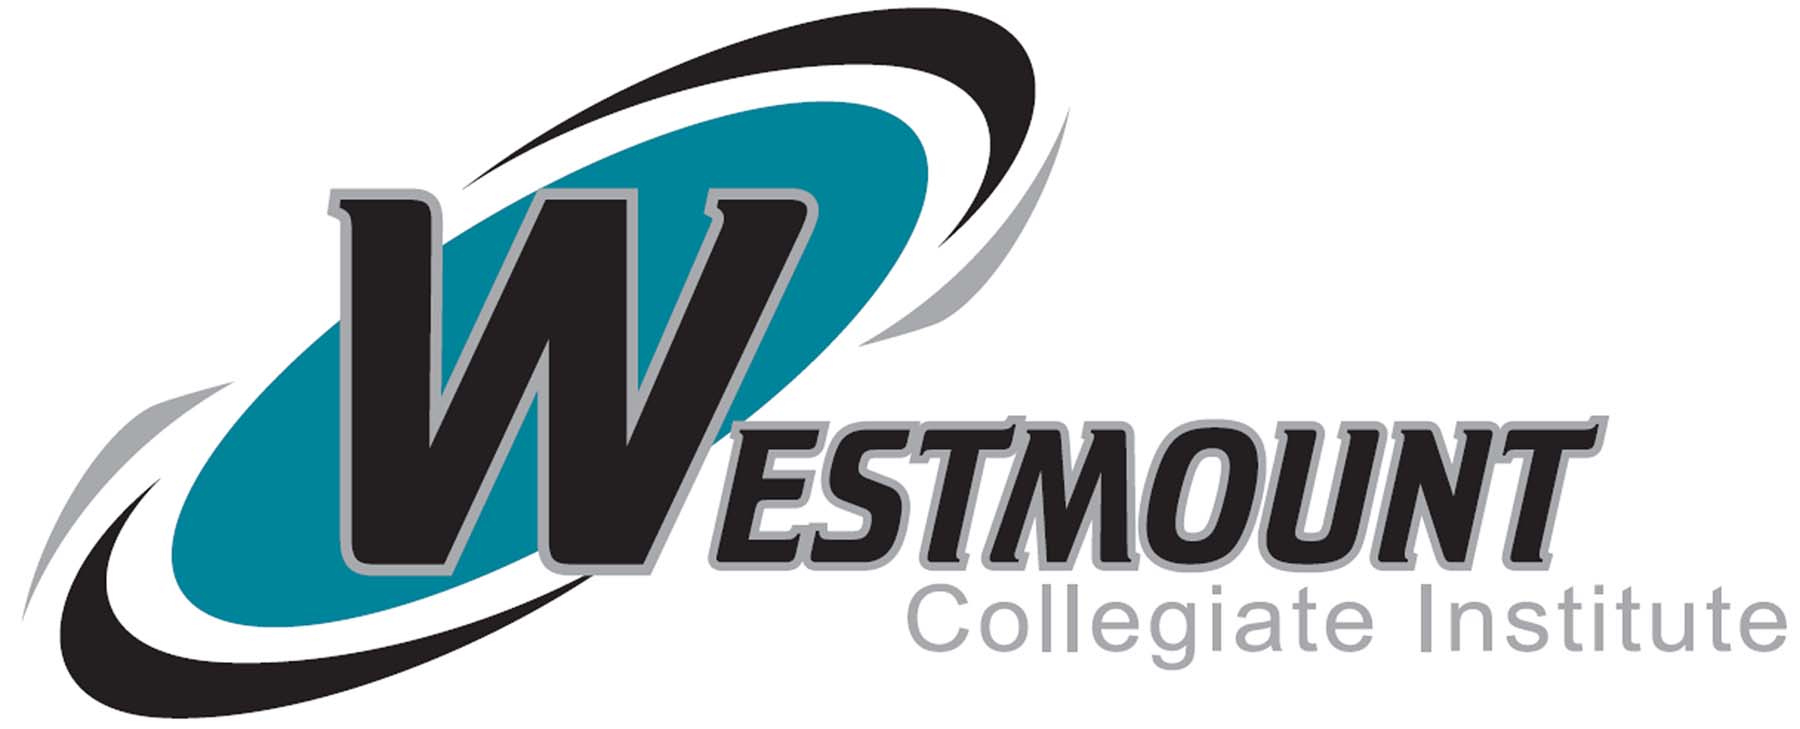 Westmount Collegiate Institute